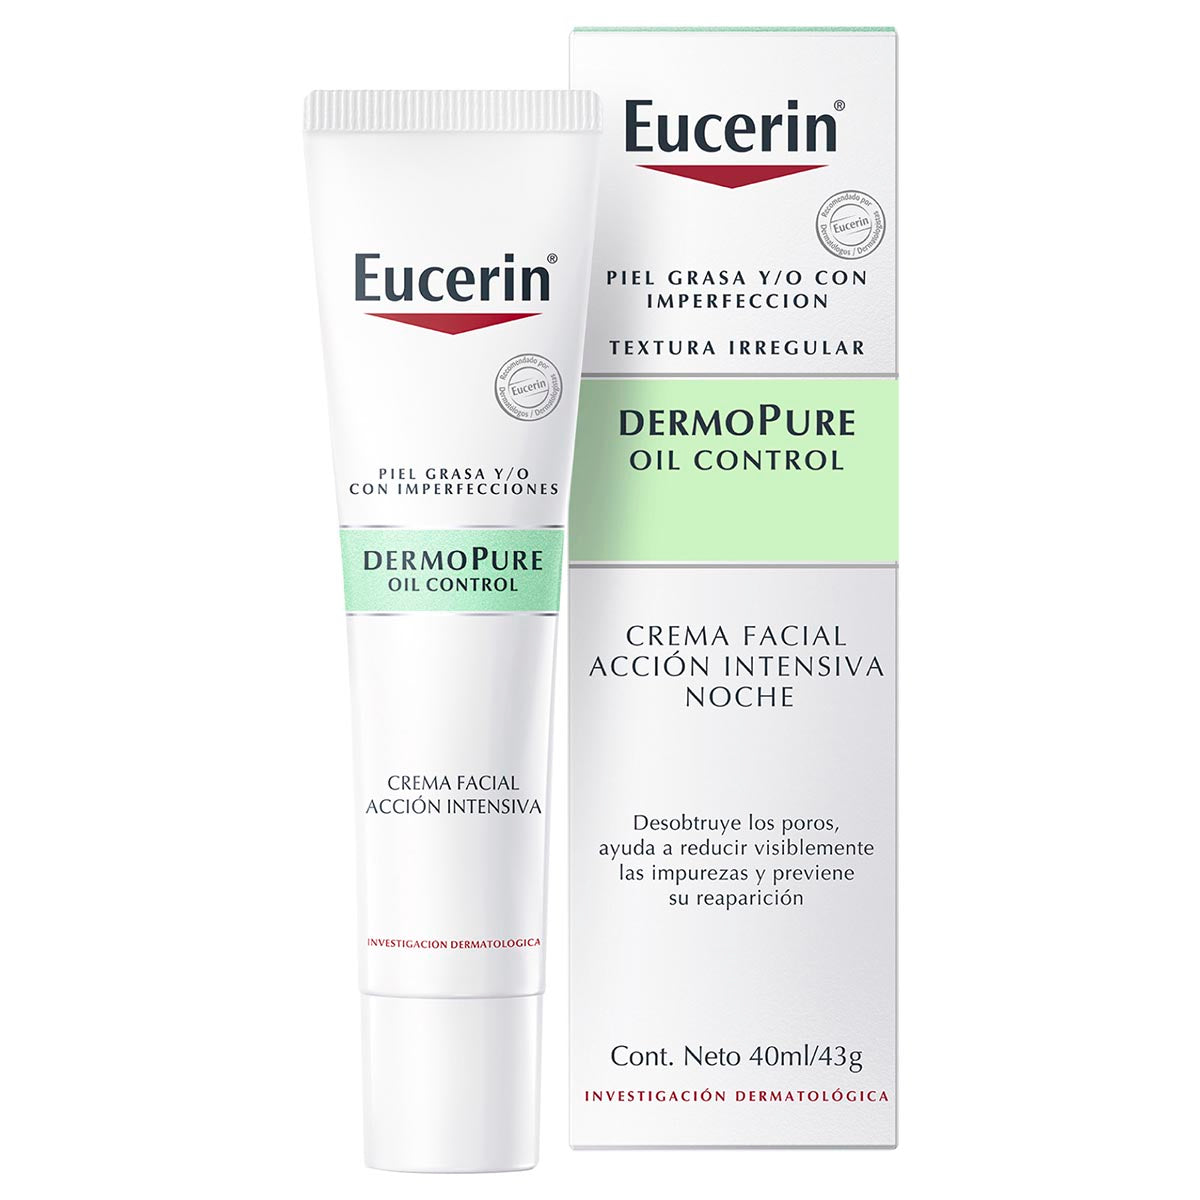 Eucerin crema facial acción intensiva noche dermopure piel grasa y/o con tendencia acneica 40ml.